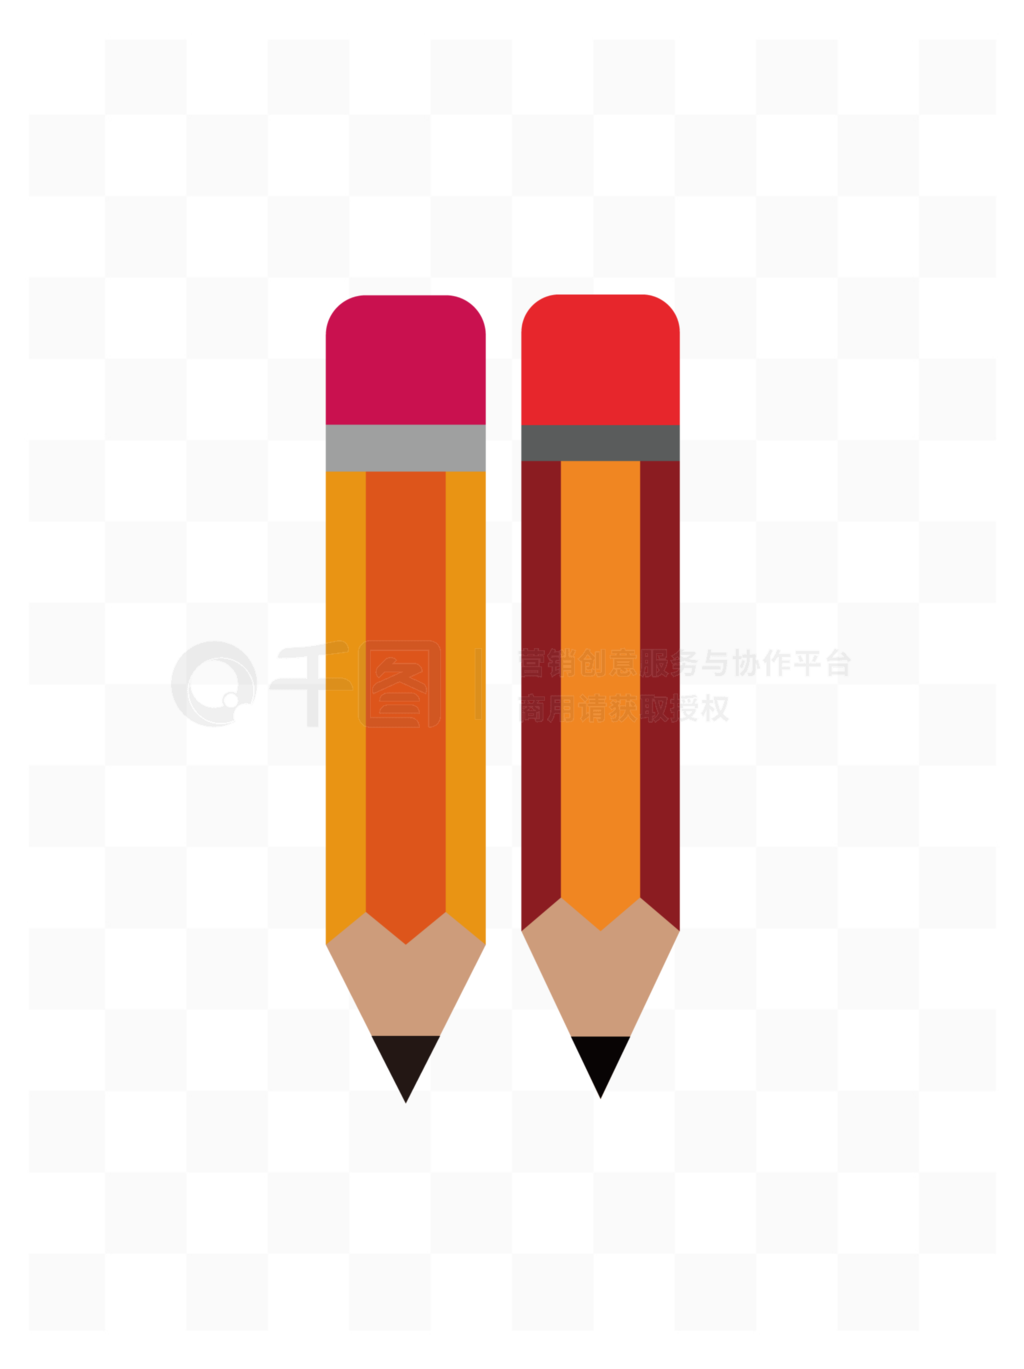 彩色文具用品铅笔矢量图学习教育样品免费模板免费下载_eps格式_2000像素_编号40784808